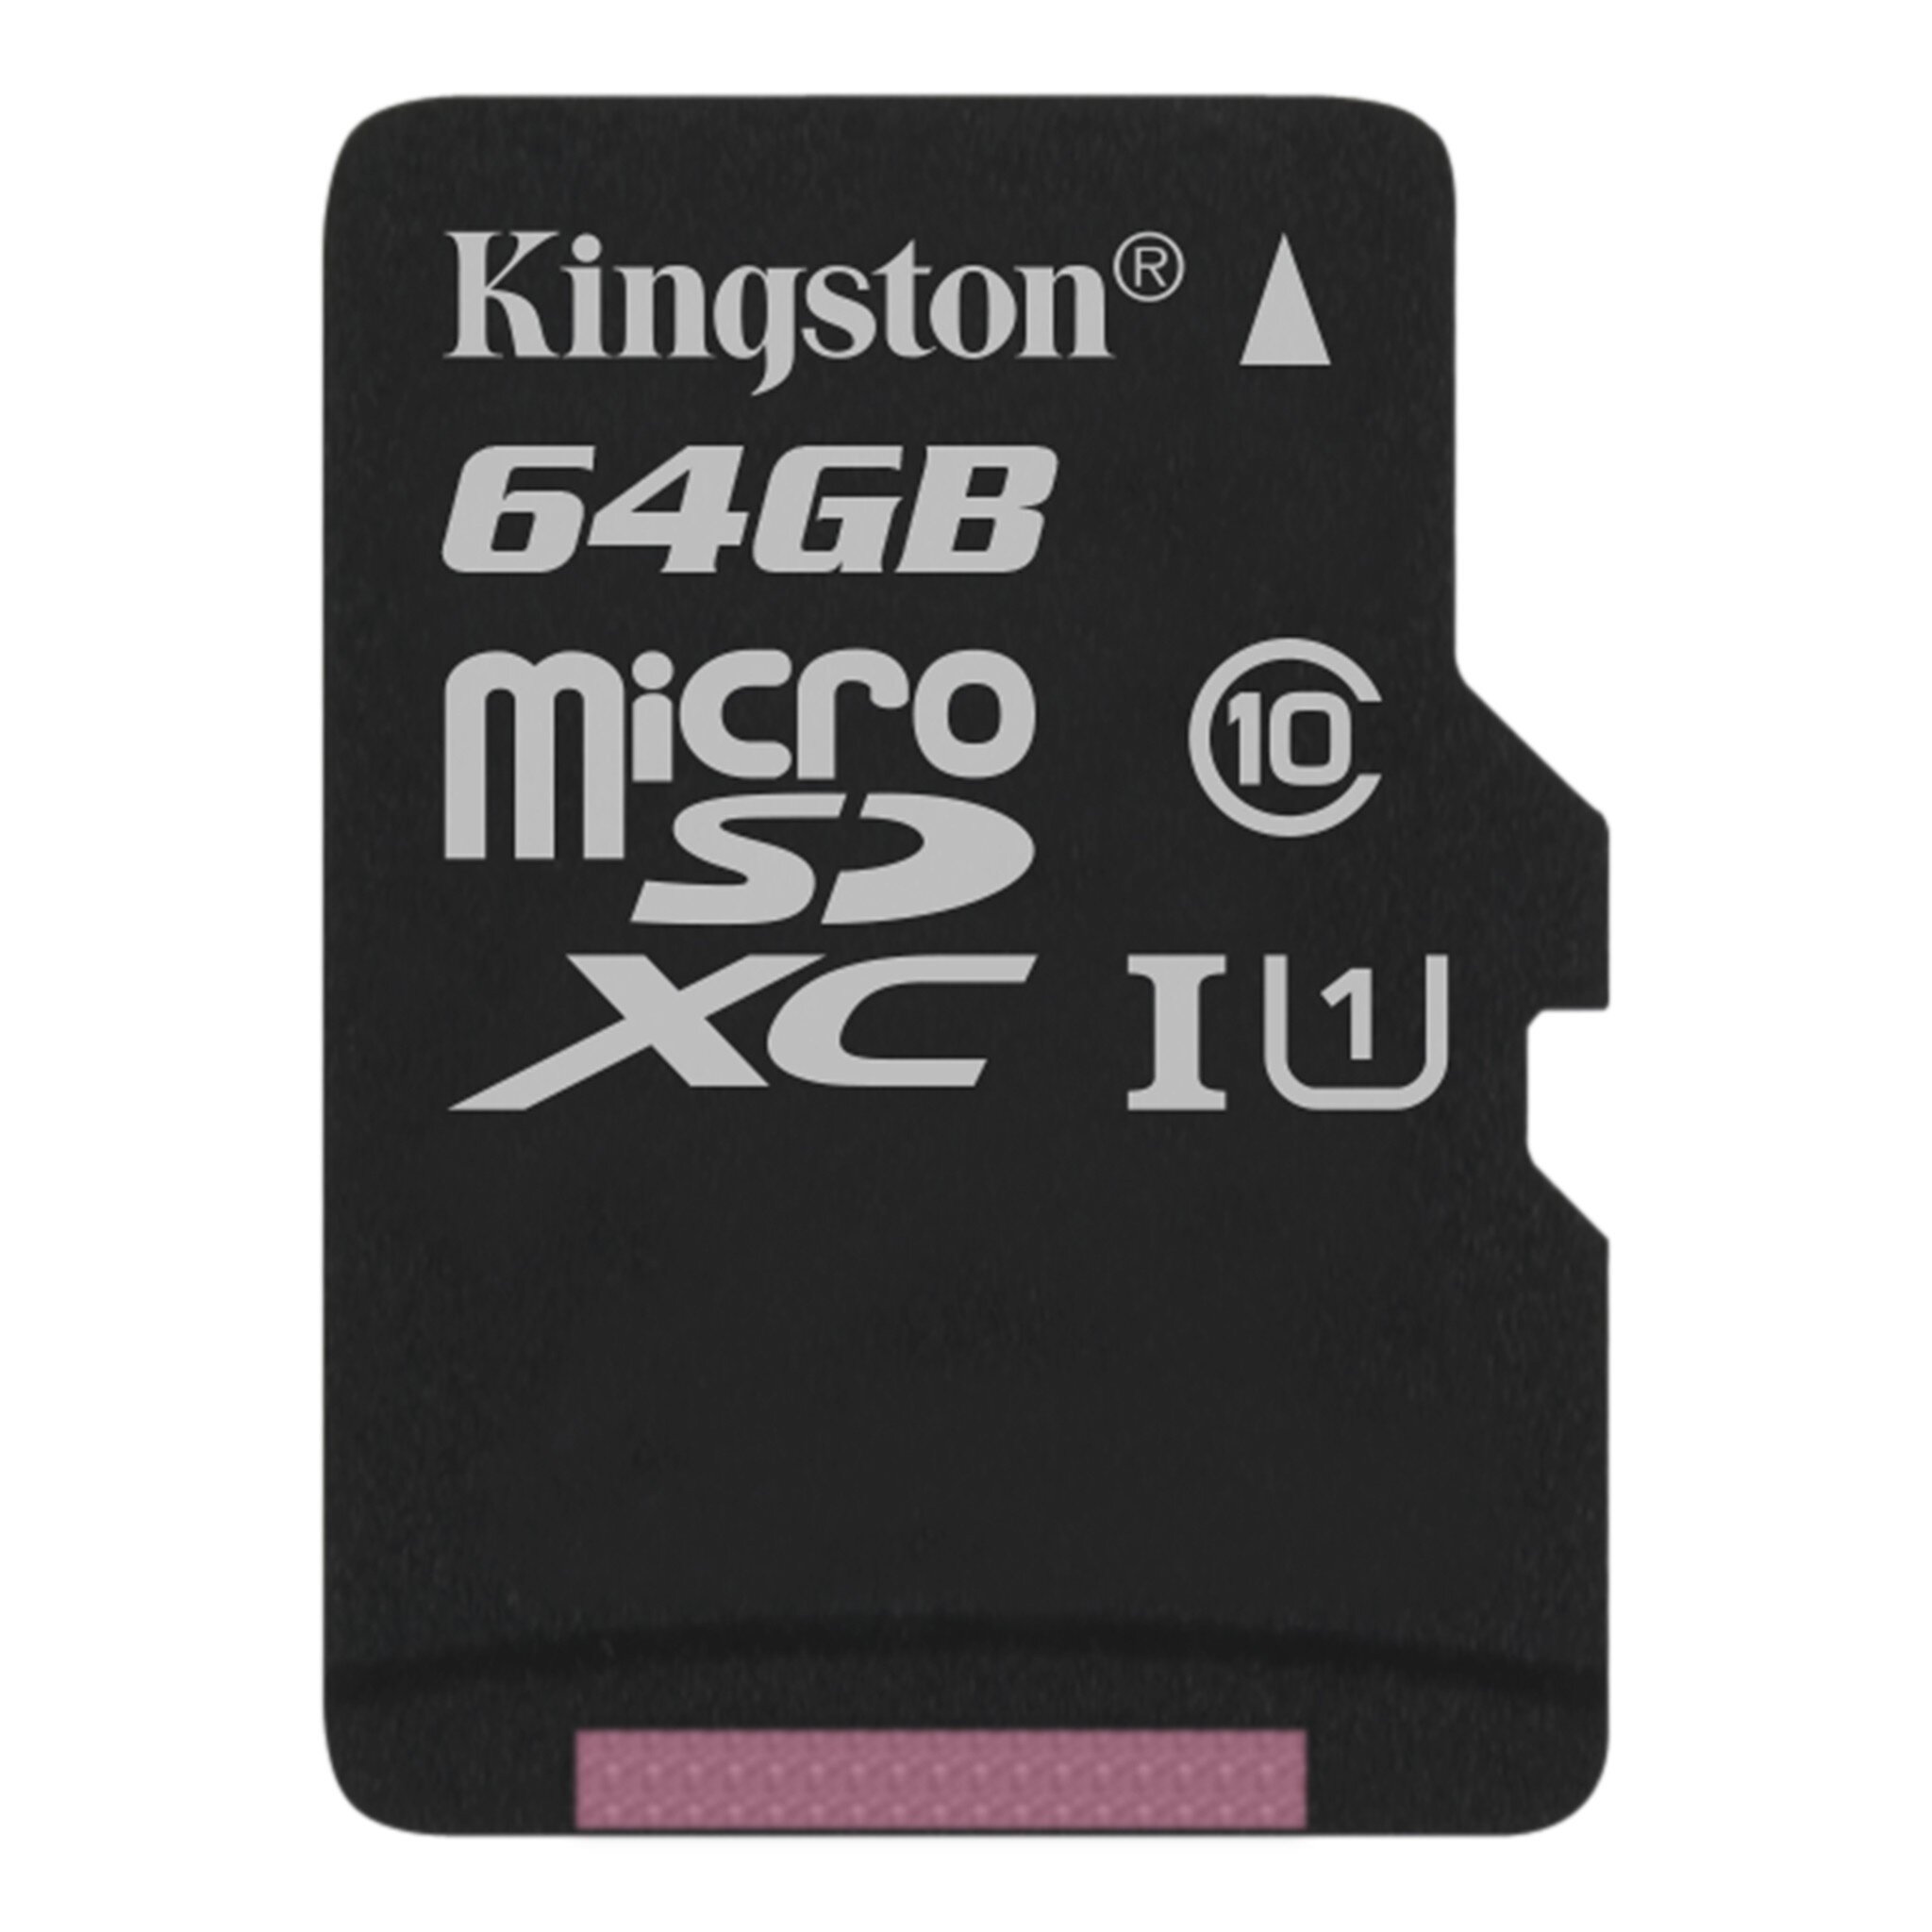 Buy Kingston Canvas Microsd Memory Card Online In Uae Tejar Com Uae